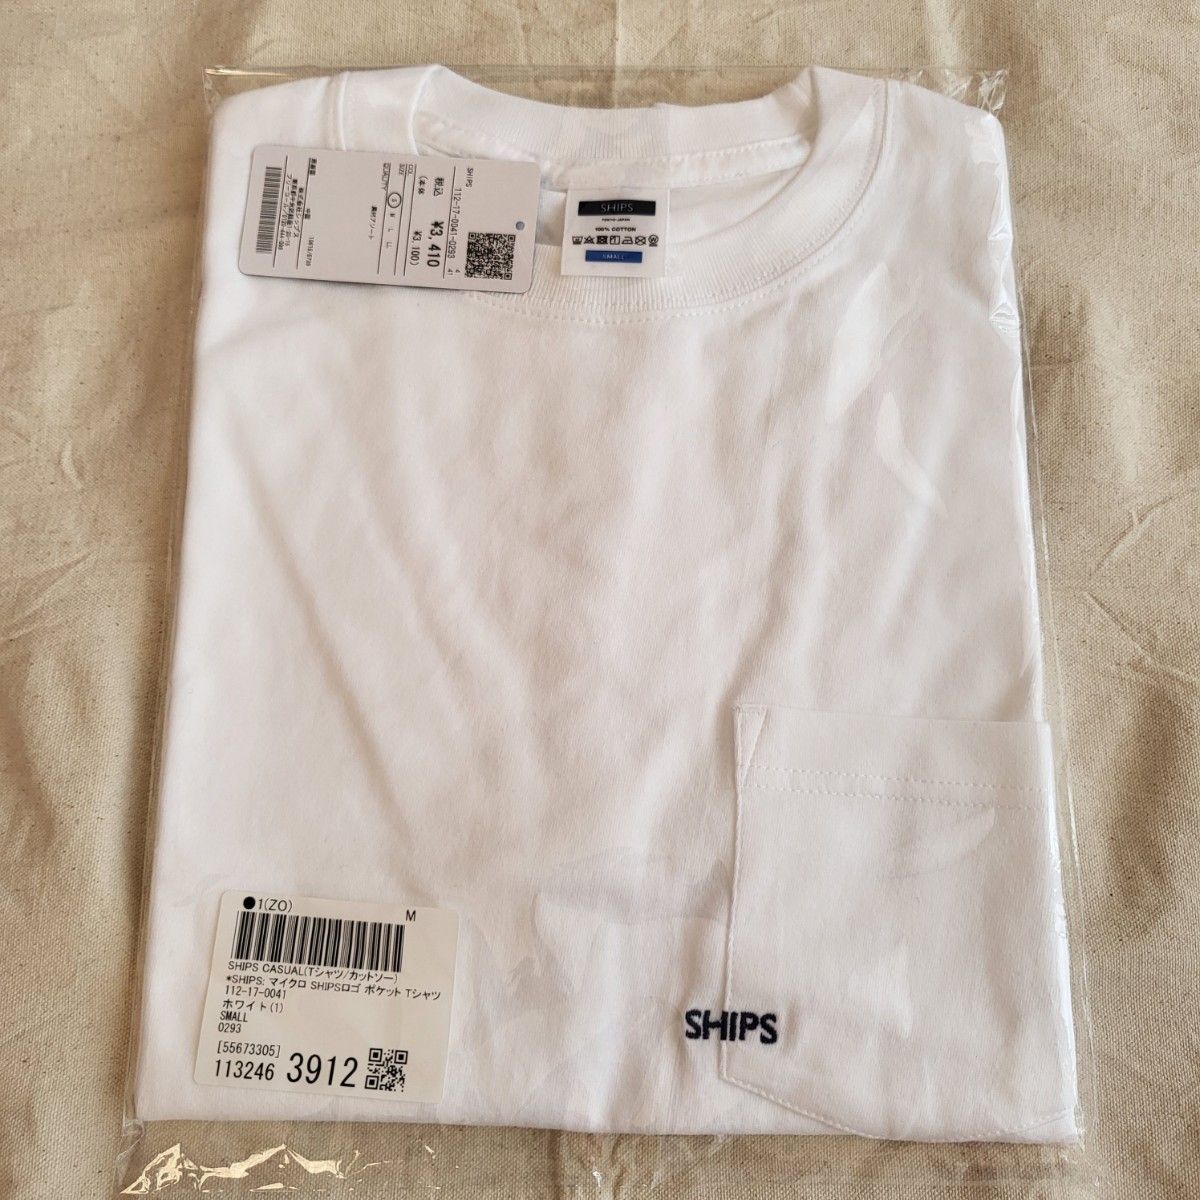 SHIPS マイクロ SHIPSロゴ ポケット Tシャツ 半袖 メンズ Sサイズ ホワイト 刺繍 青 ブルー ネイビー